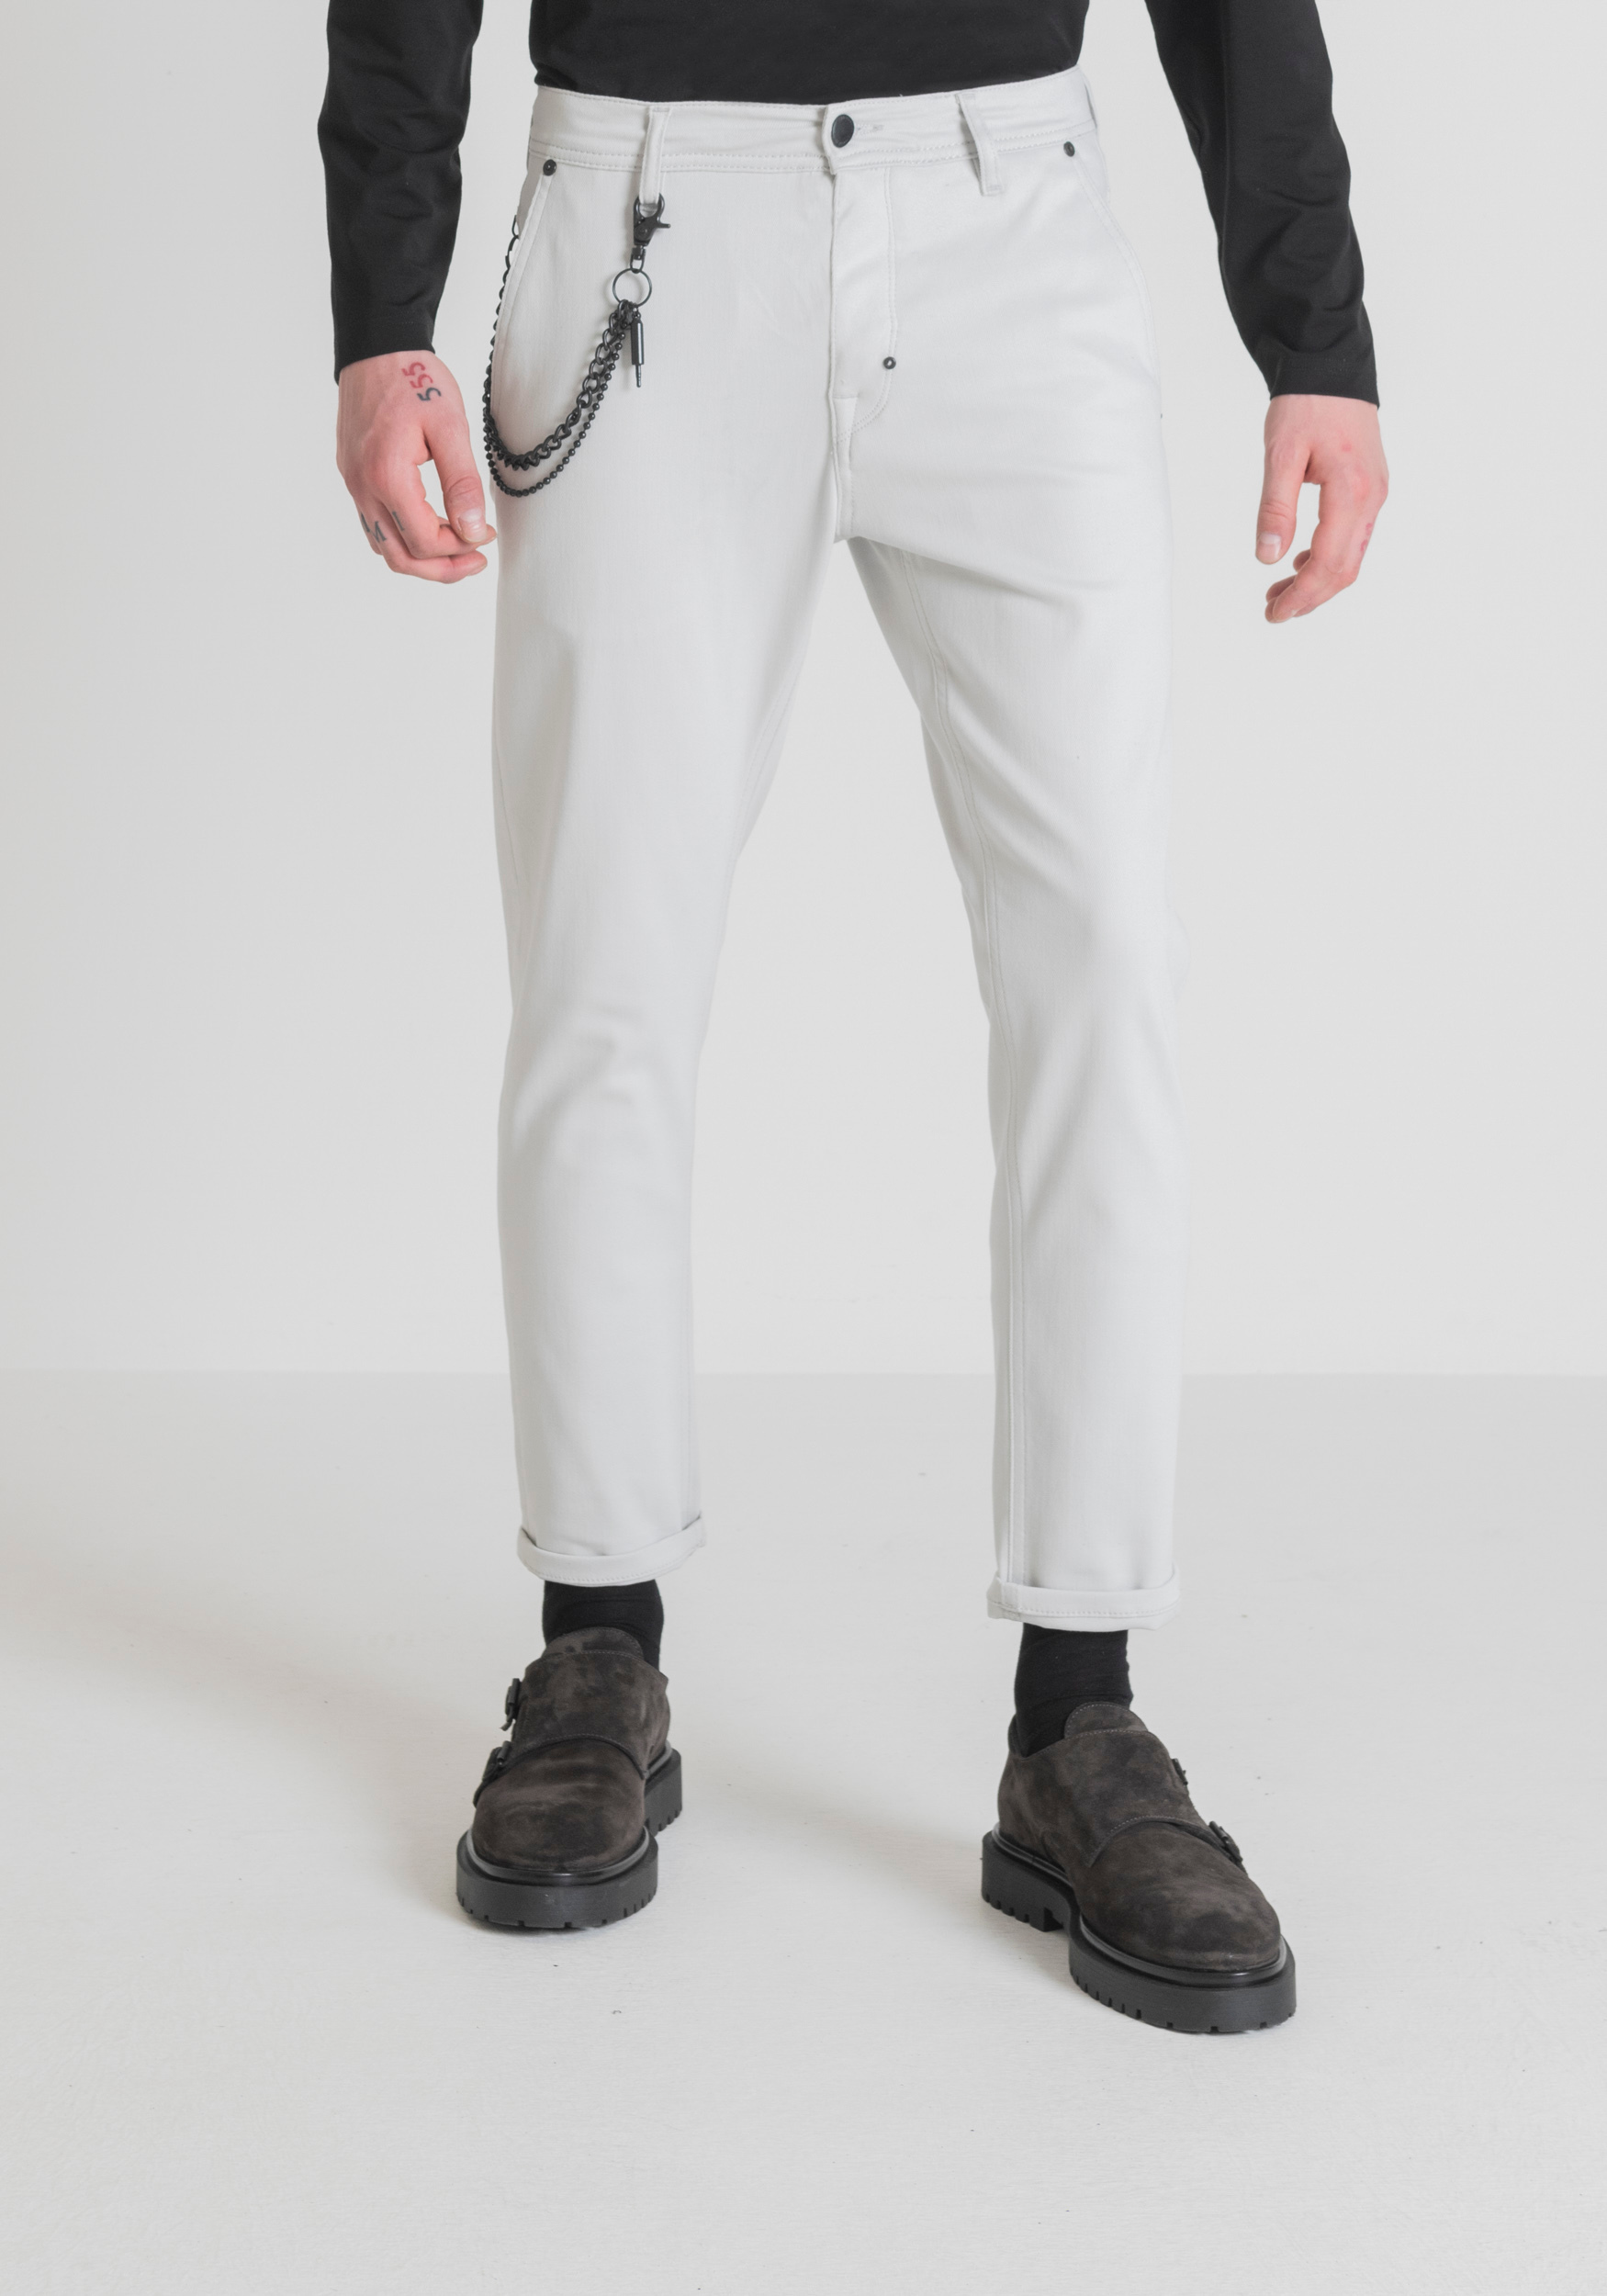 Antony Morato Pantalon Slim Fit Oliver A La Cheville En Serge De Coton Doux Stretch Glace | Homme Pantalons